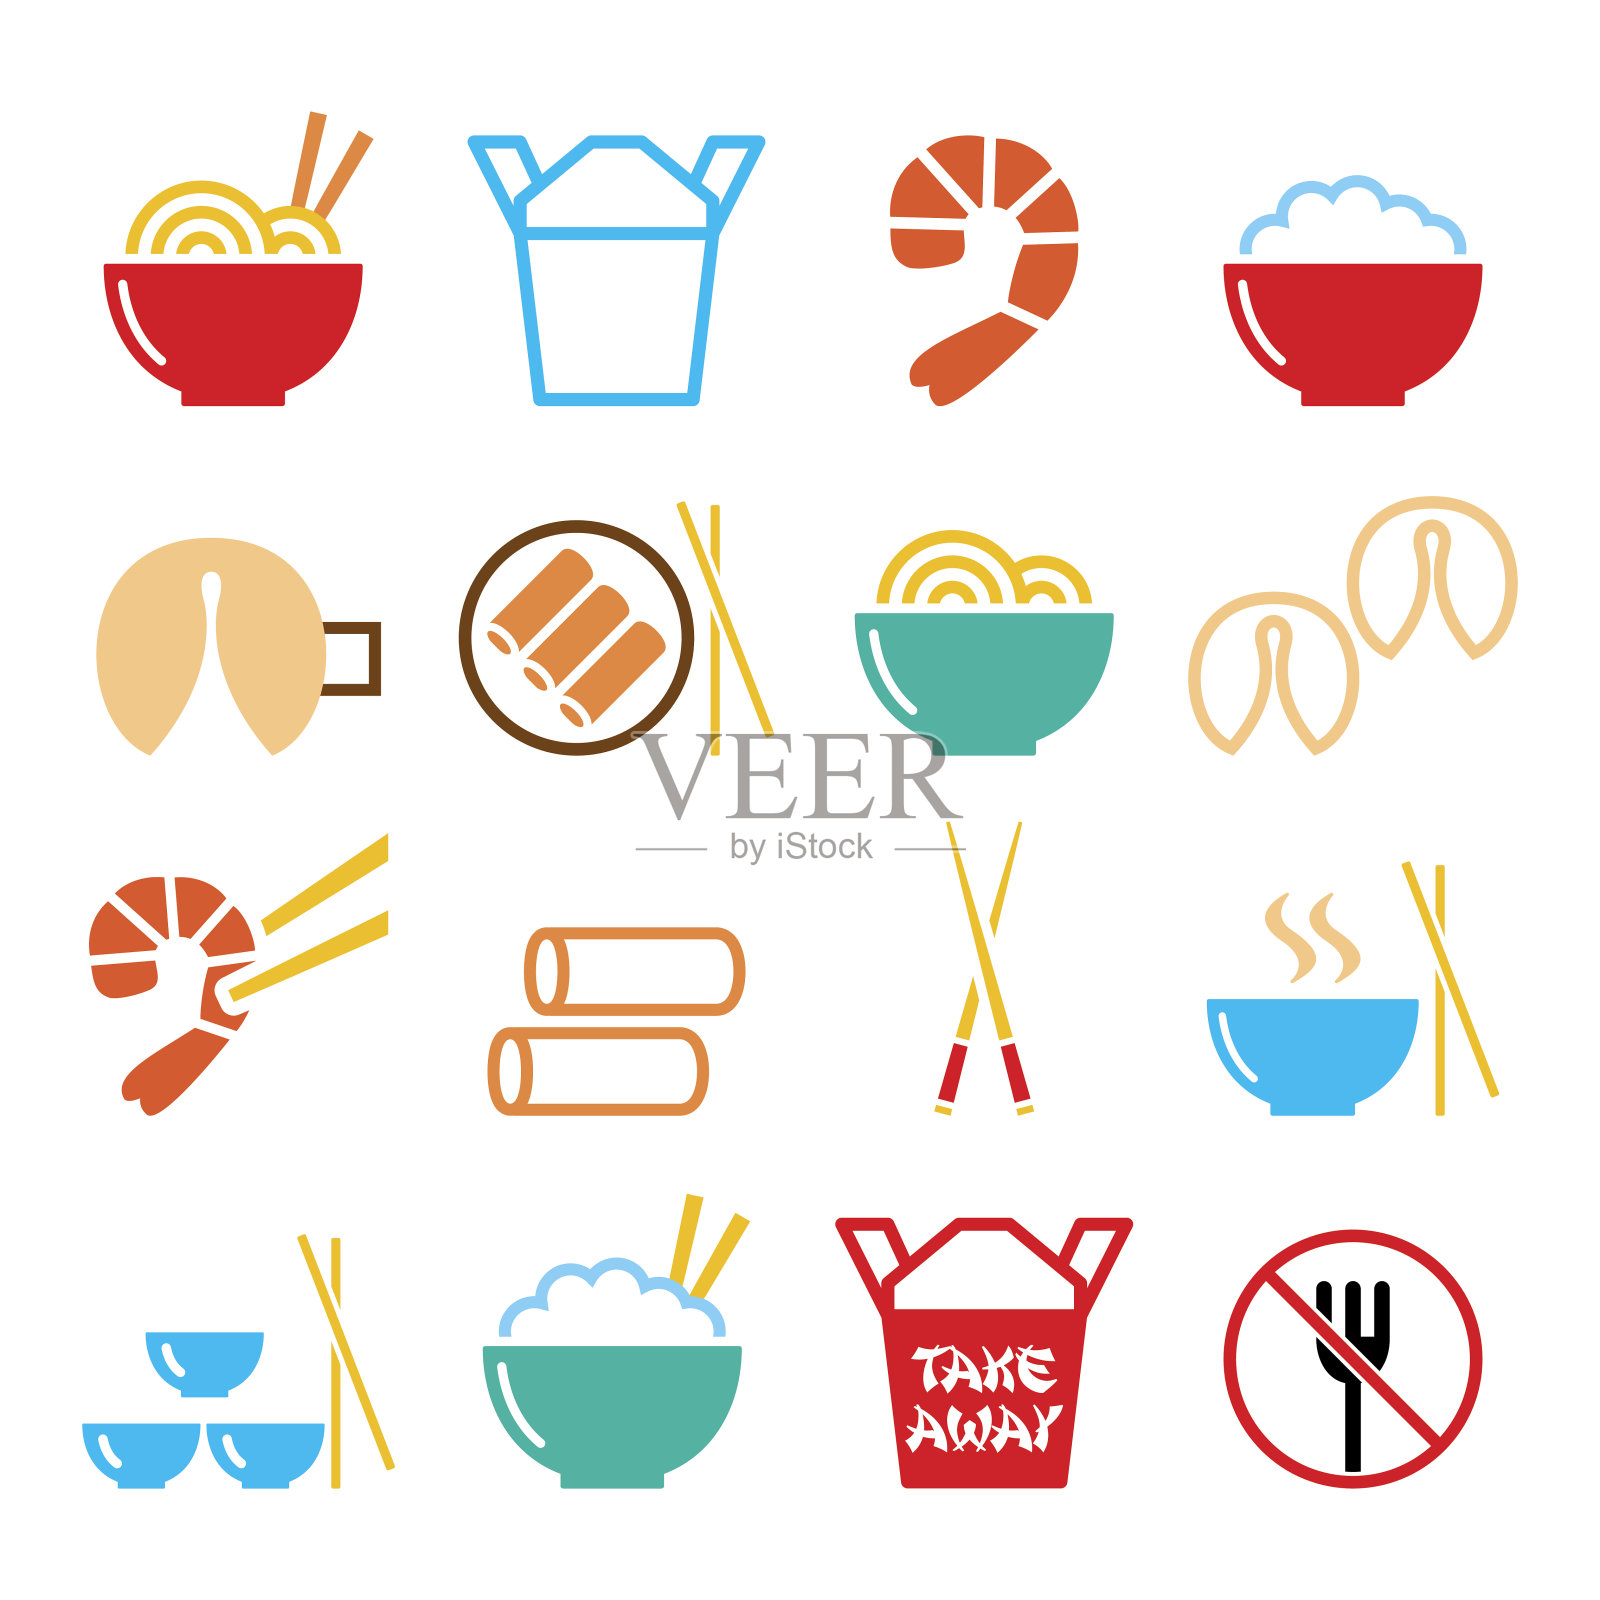 中国人的外卖食品象征——意大利面、米饭、春卷、幸运饼干图标素材